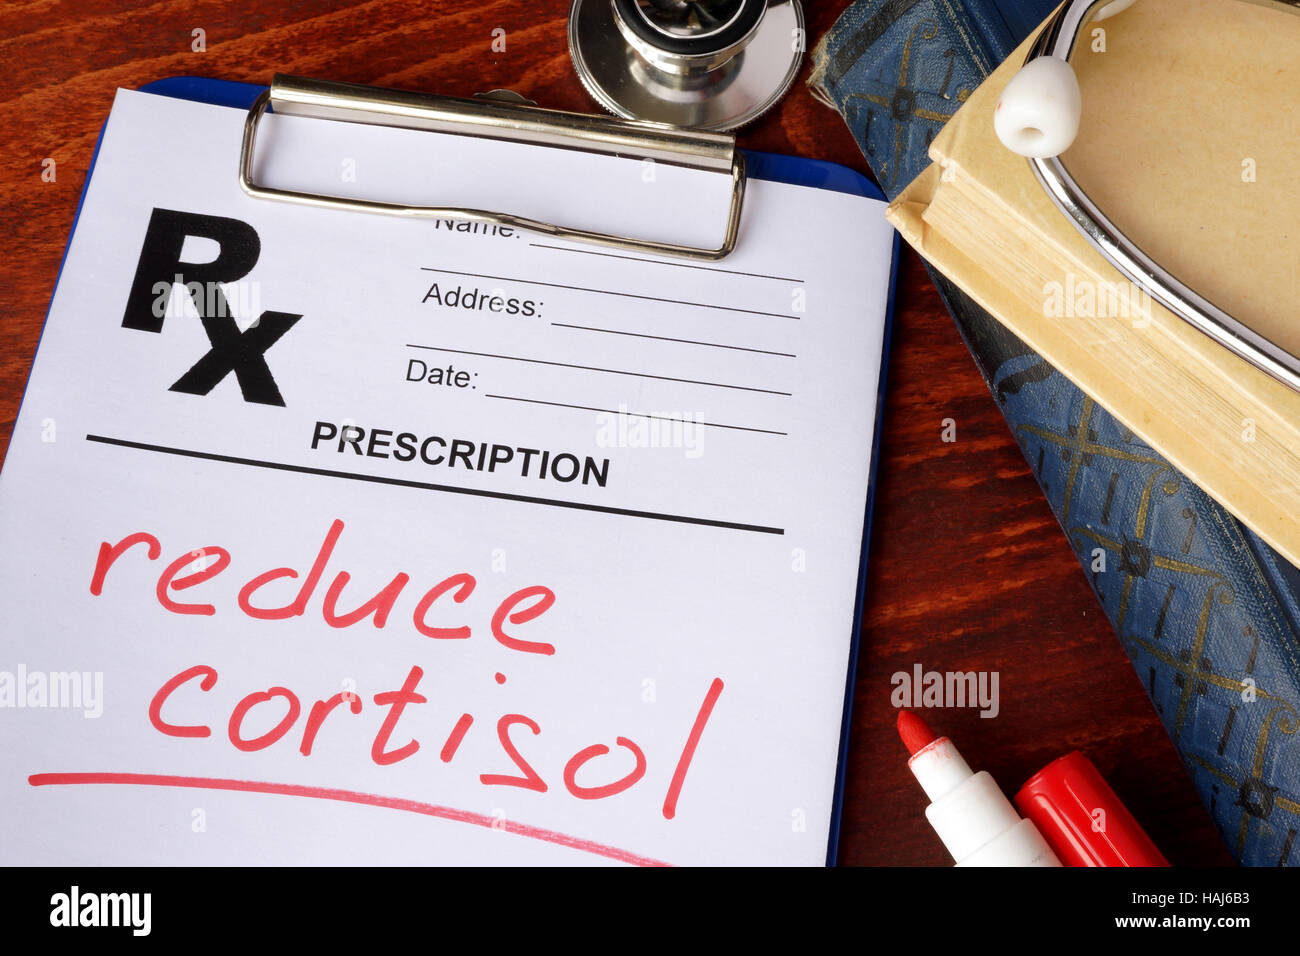 Modulo di prescrizione con parole di ridurre il cortisolo. Concetto medico. Foto Stock